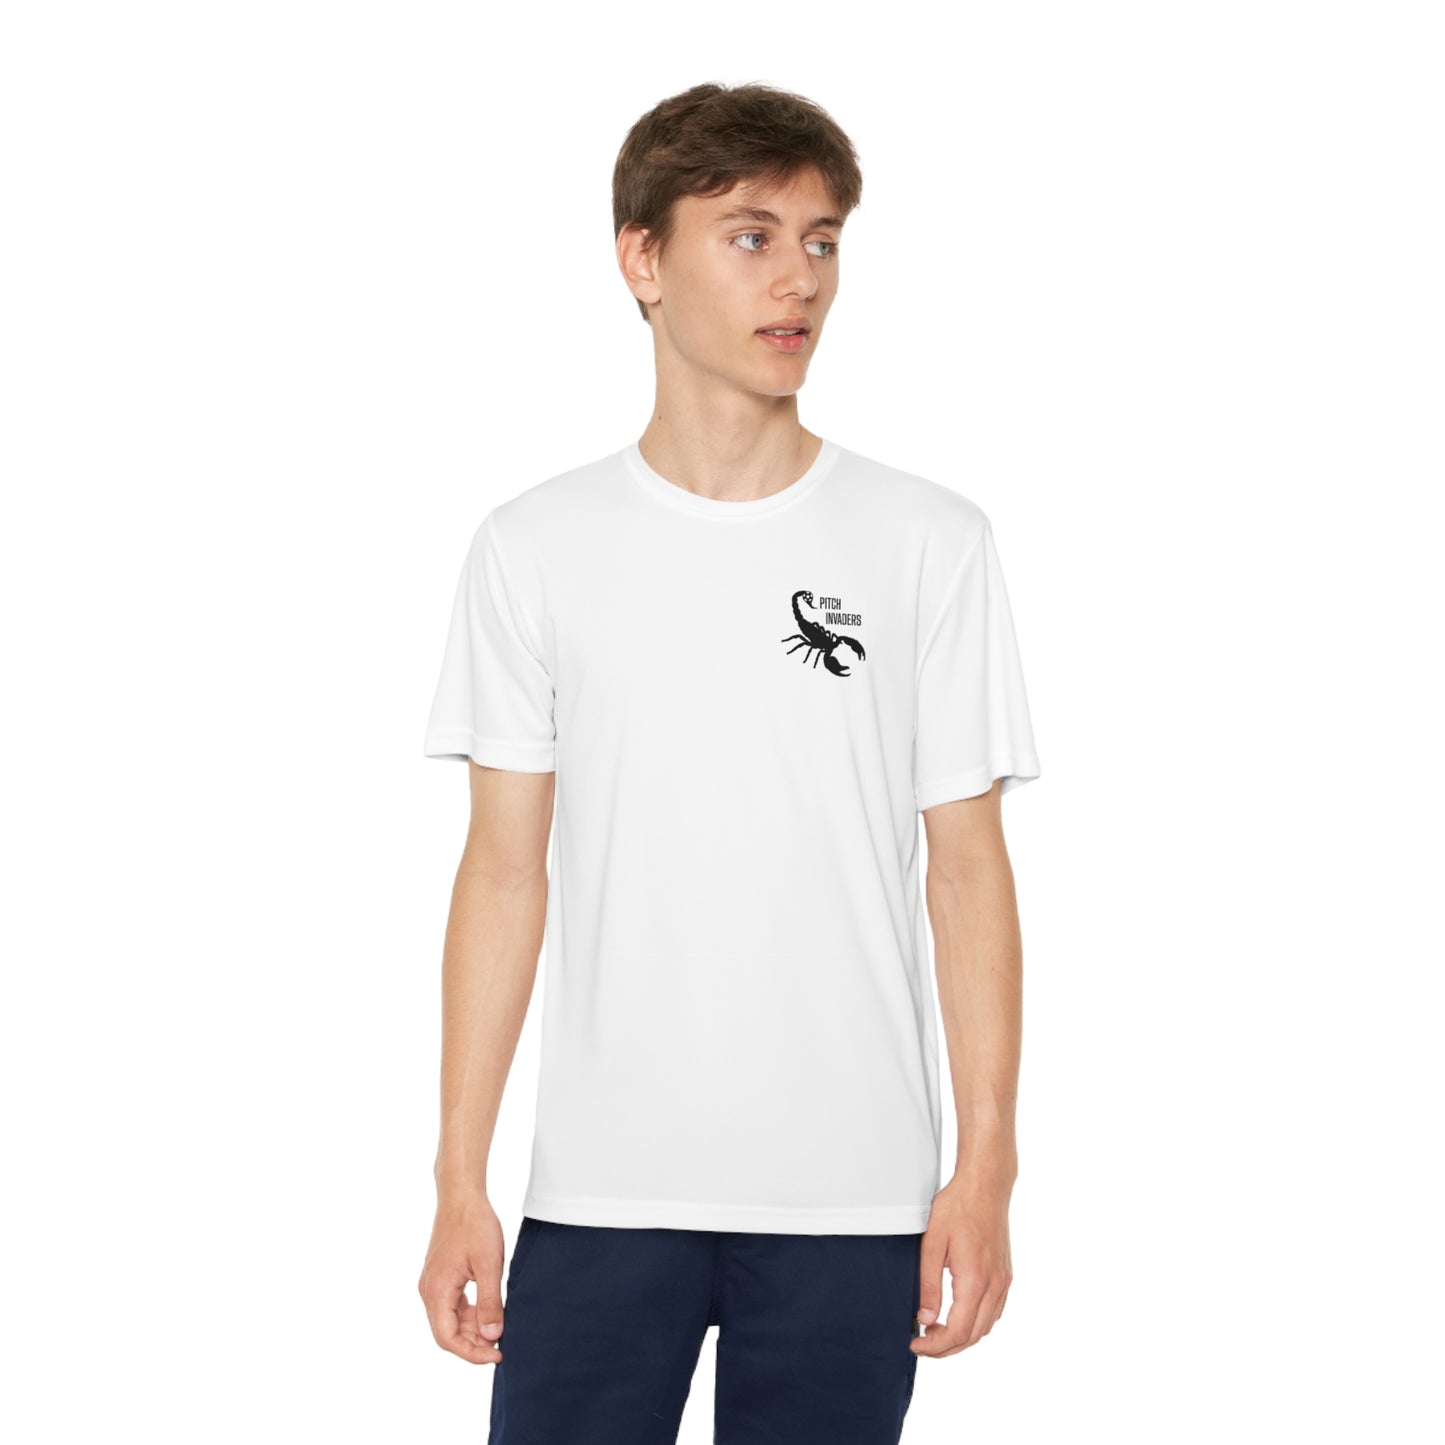 GOLAZO GETTER Youth Athletic T-Shirt (Unisex)